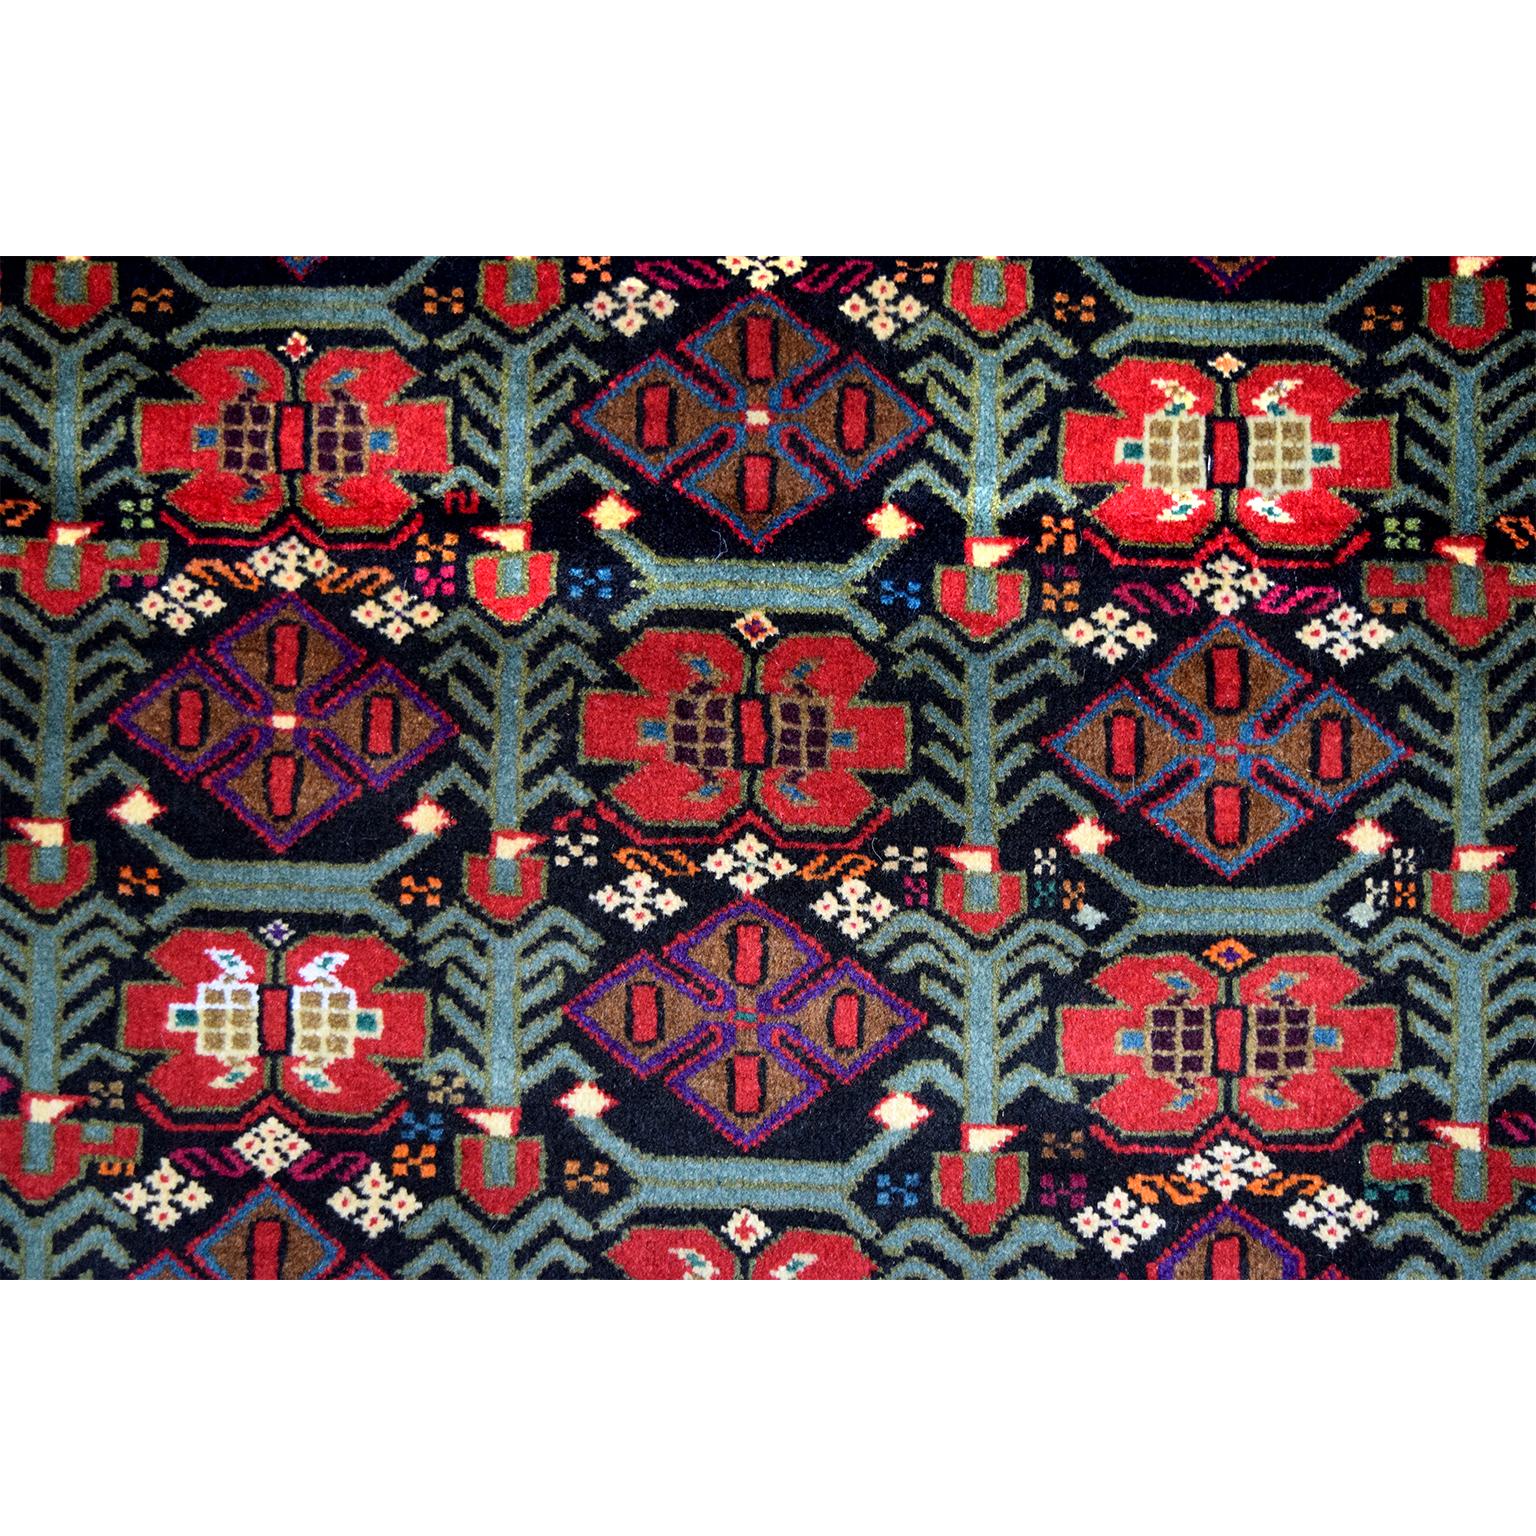 Ce tapis persan Balouchi en laine filée à la main et teintures végétales, datant de 1950, présente un motif géométrique complexe avec de multiples bordures et une coloration unique de rouges chauds et de roses froids, de bleus et de verts. Alors que